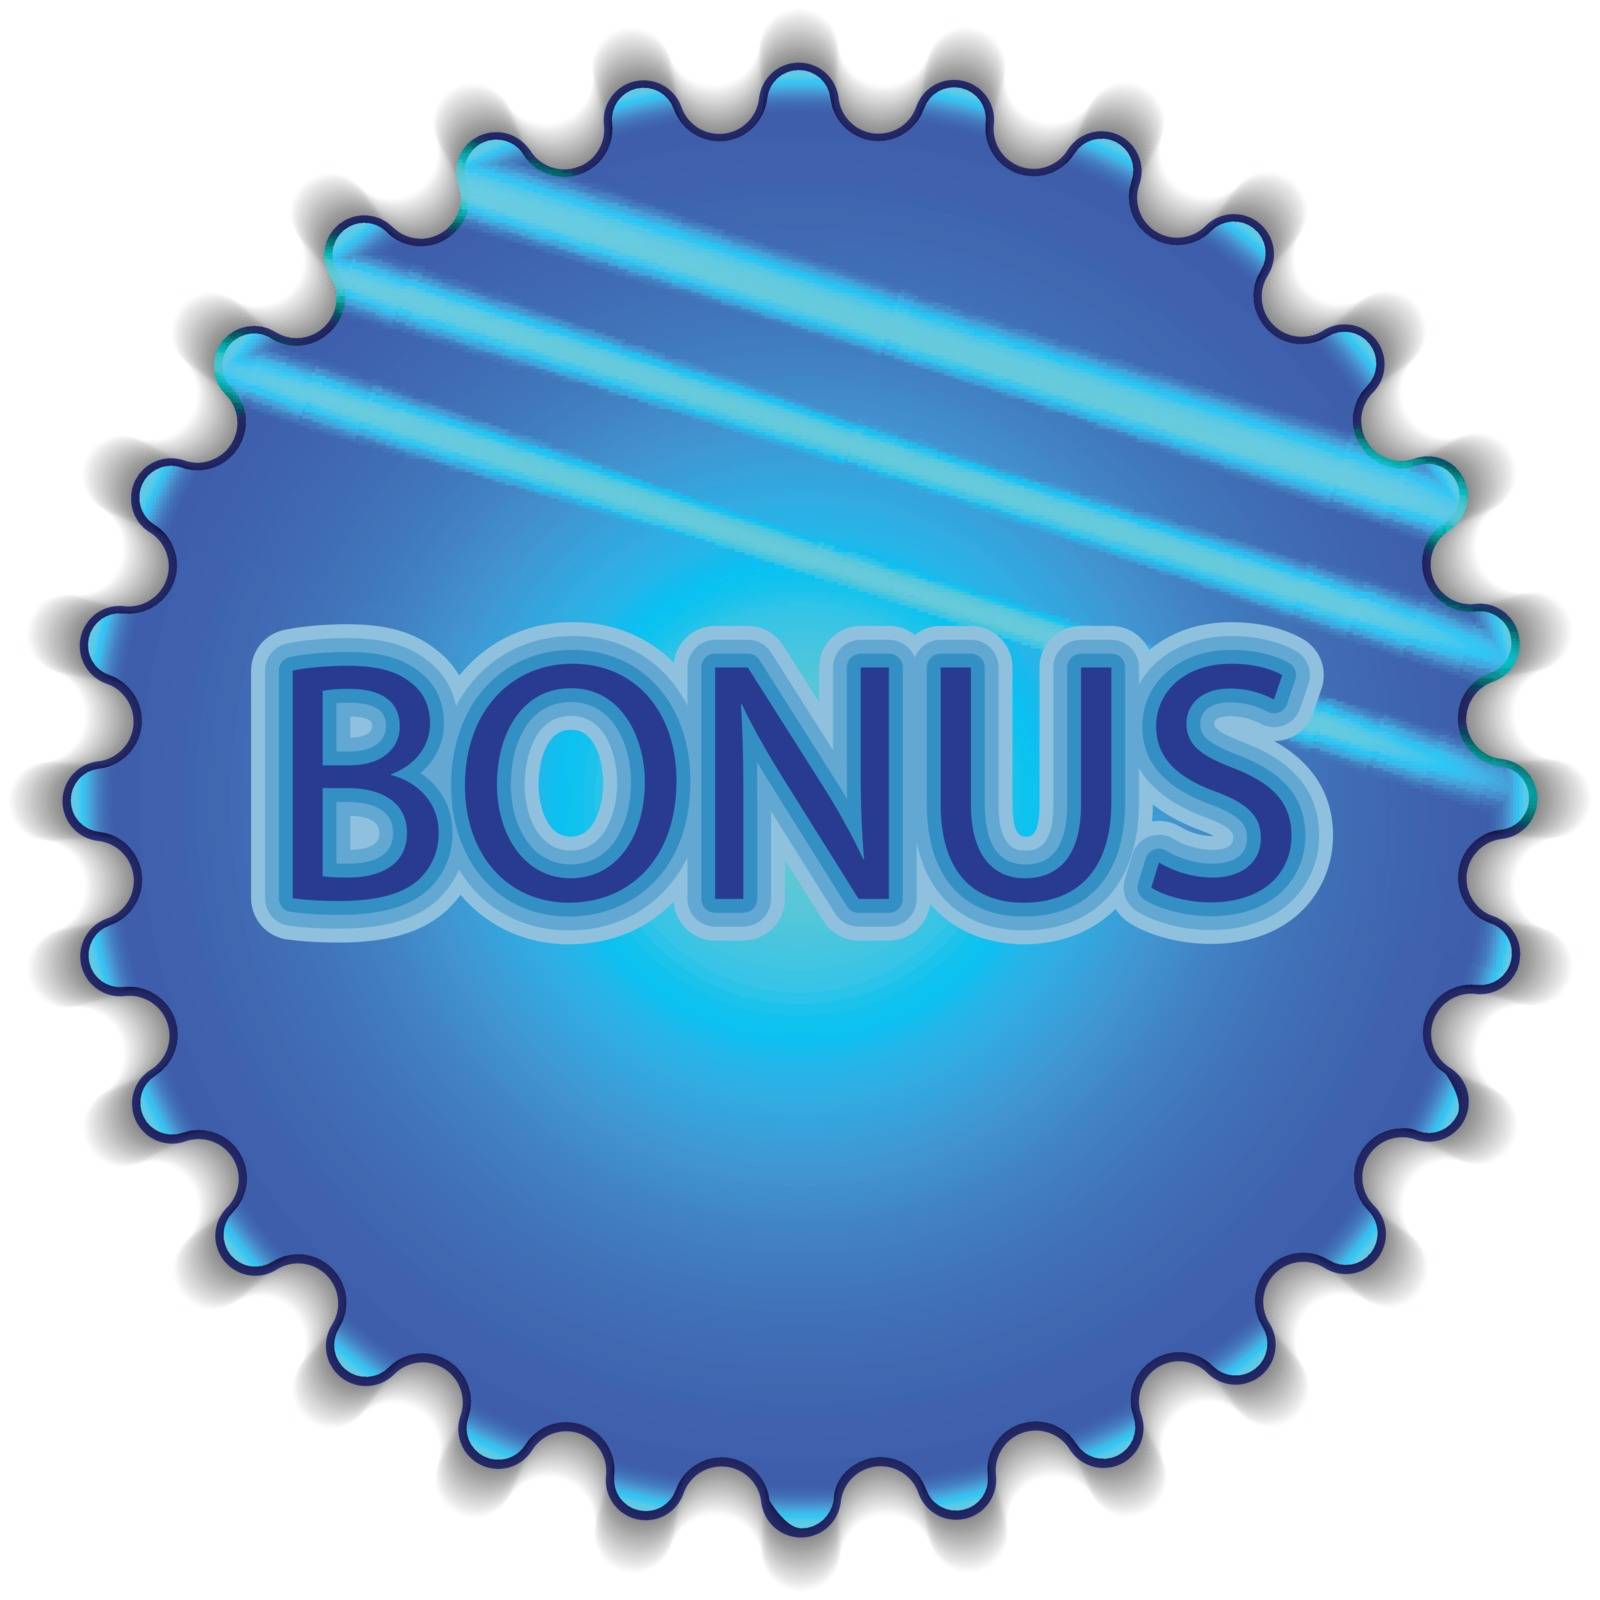 Big blue button labeled "Bonus"